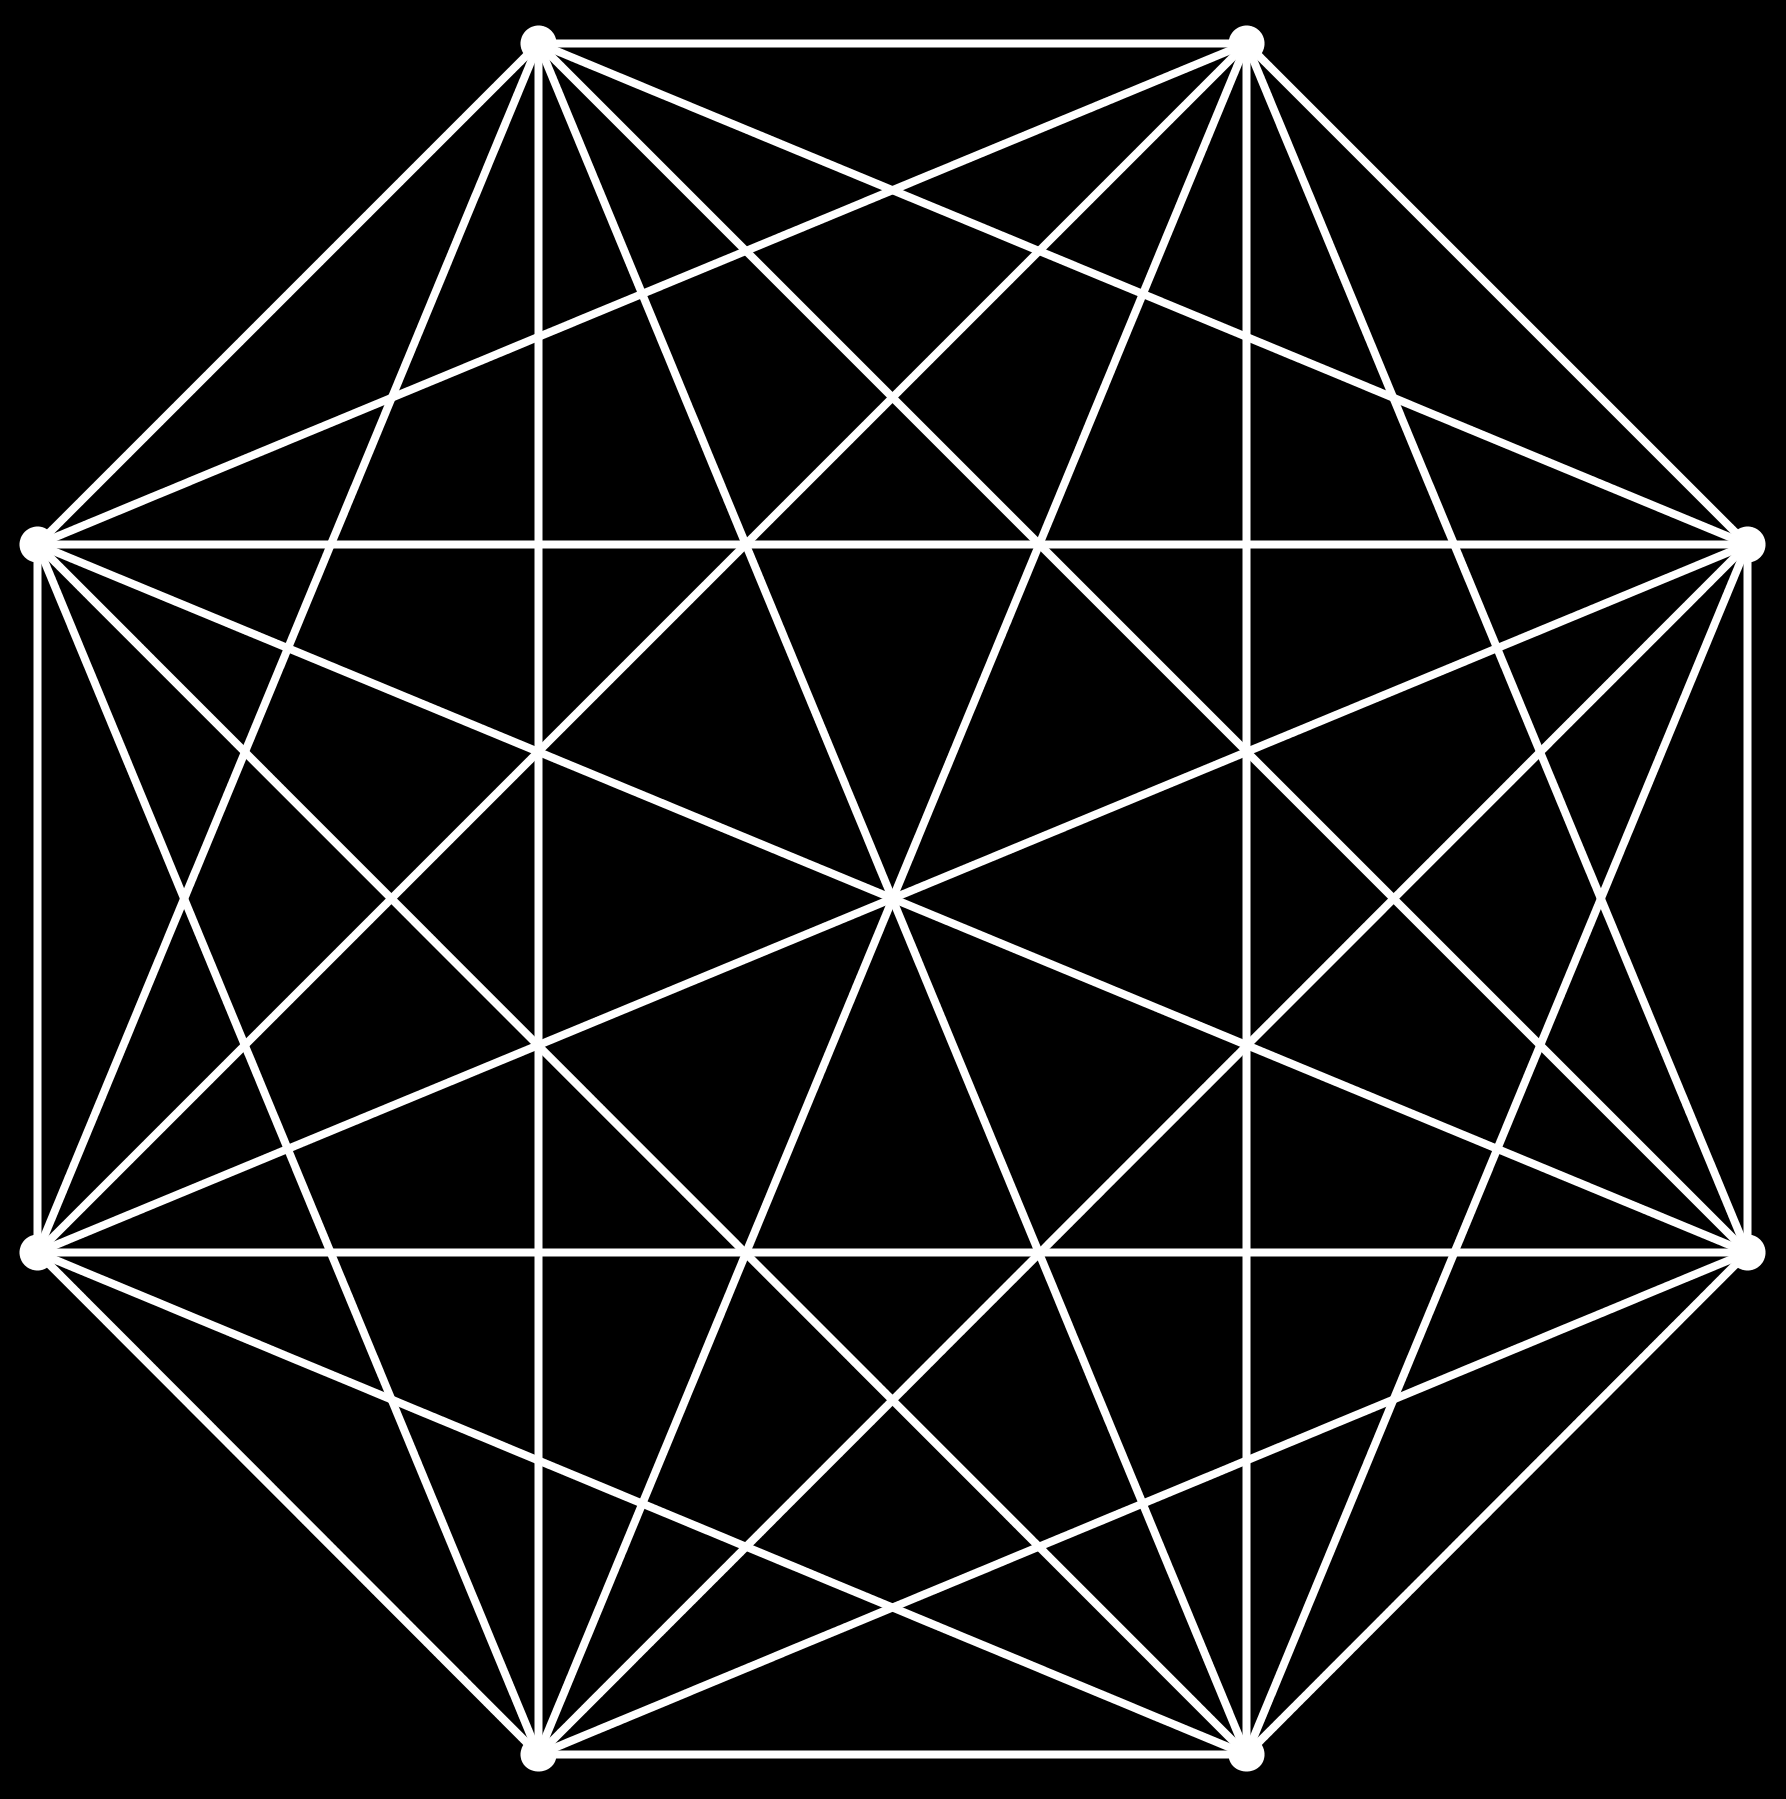 23 Isto deve ocorrer para cada um dos vértices. Ou seja, de cada vértice devem partir três arestas azuis.